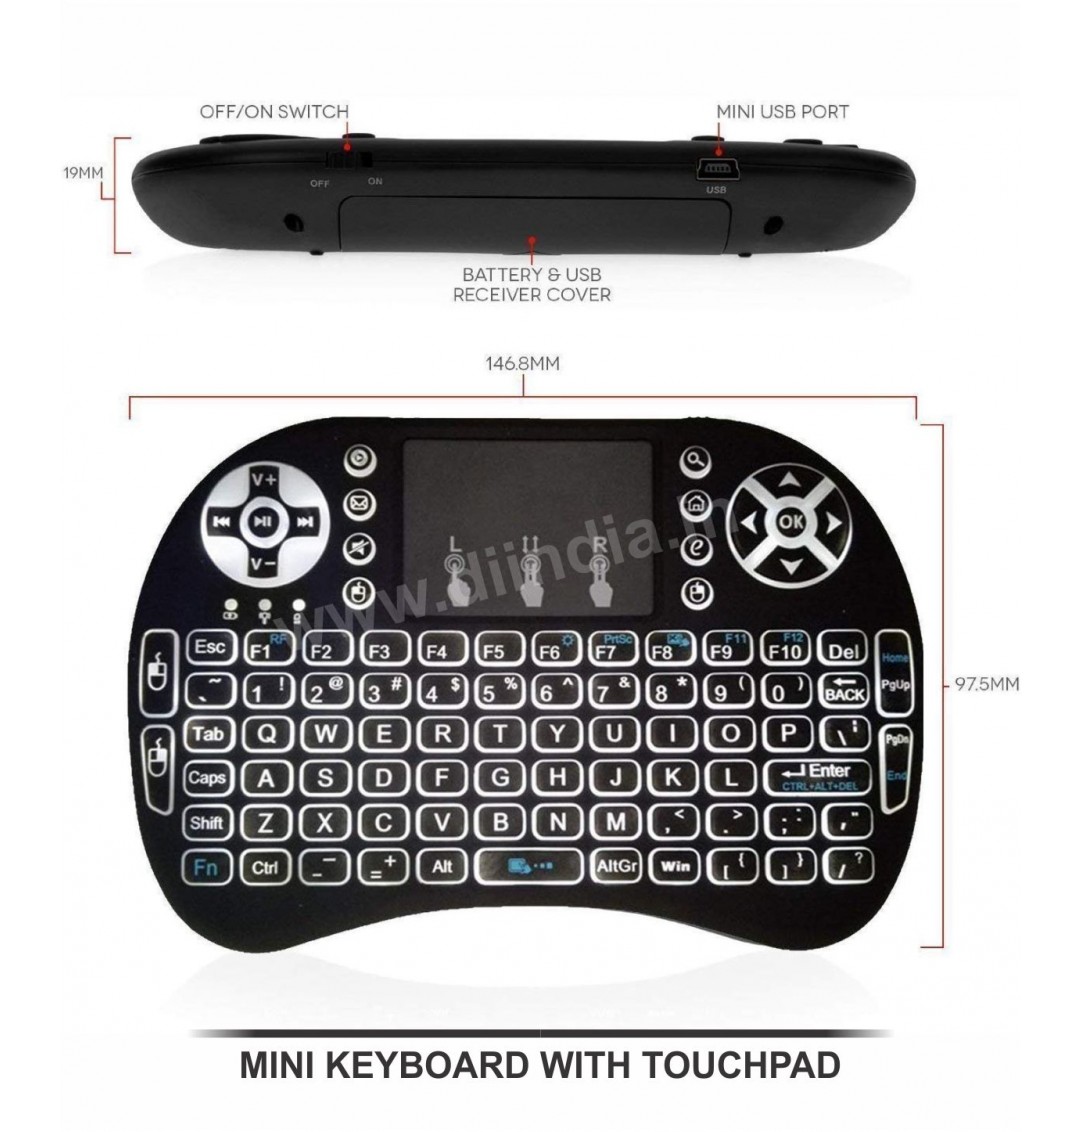 Di Mini Keyboard With Touchpad